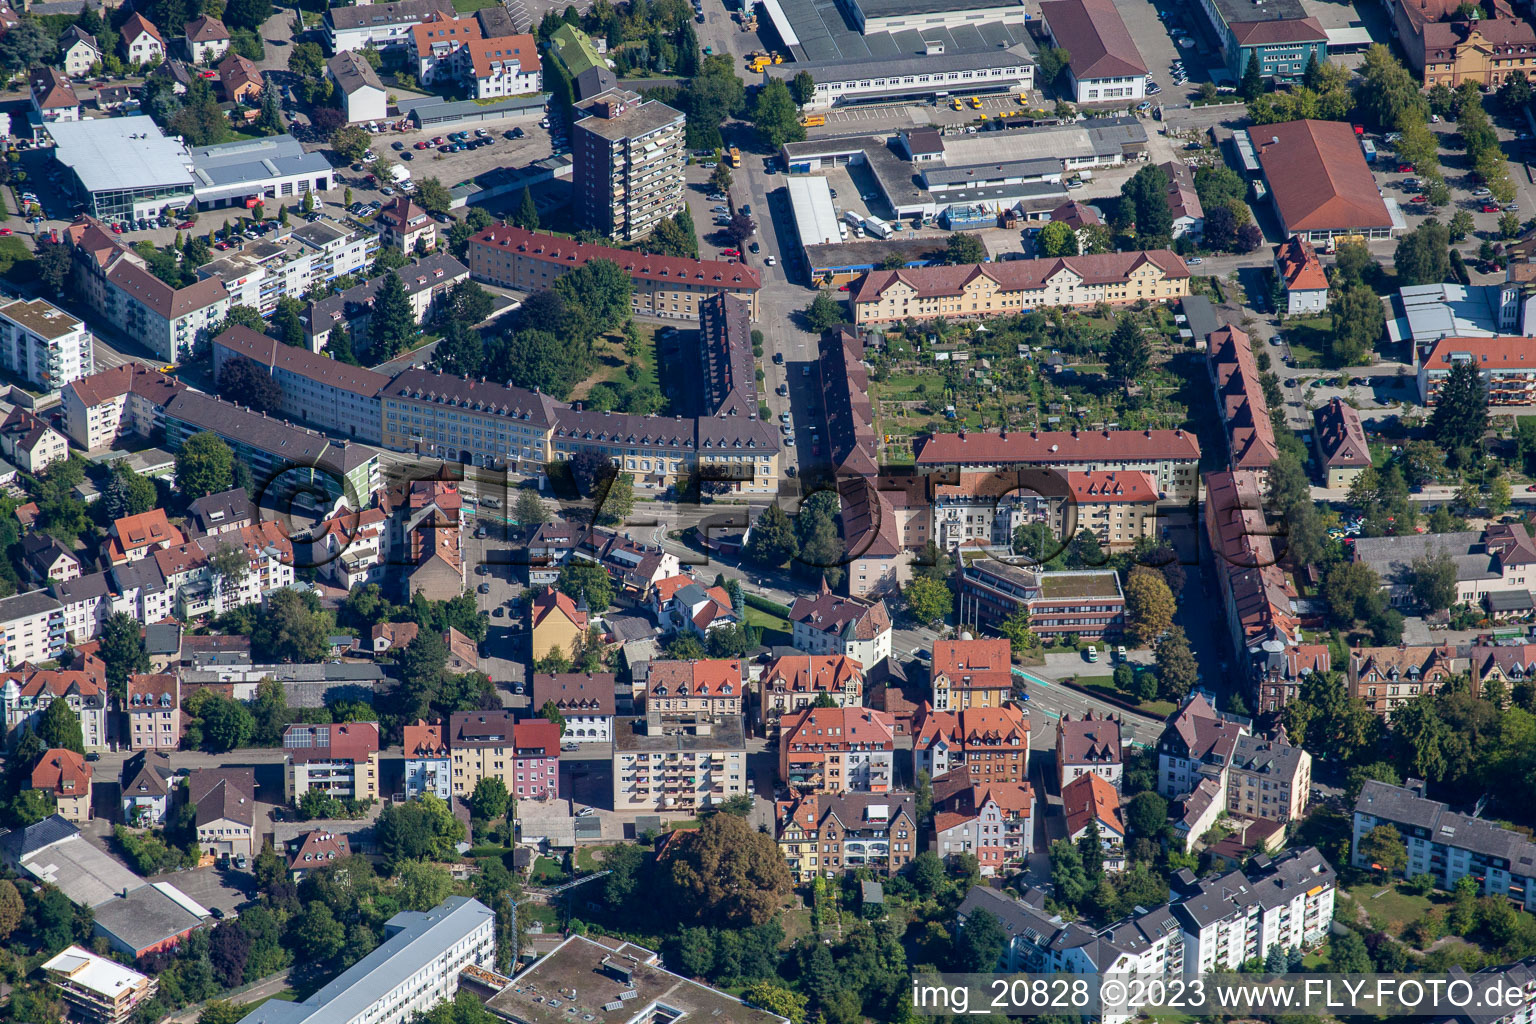 Luftbild von Straßburger Straße in Offenburg im Bundesland Baden-Württemberg, Deutschland